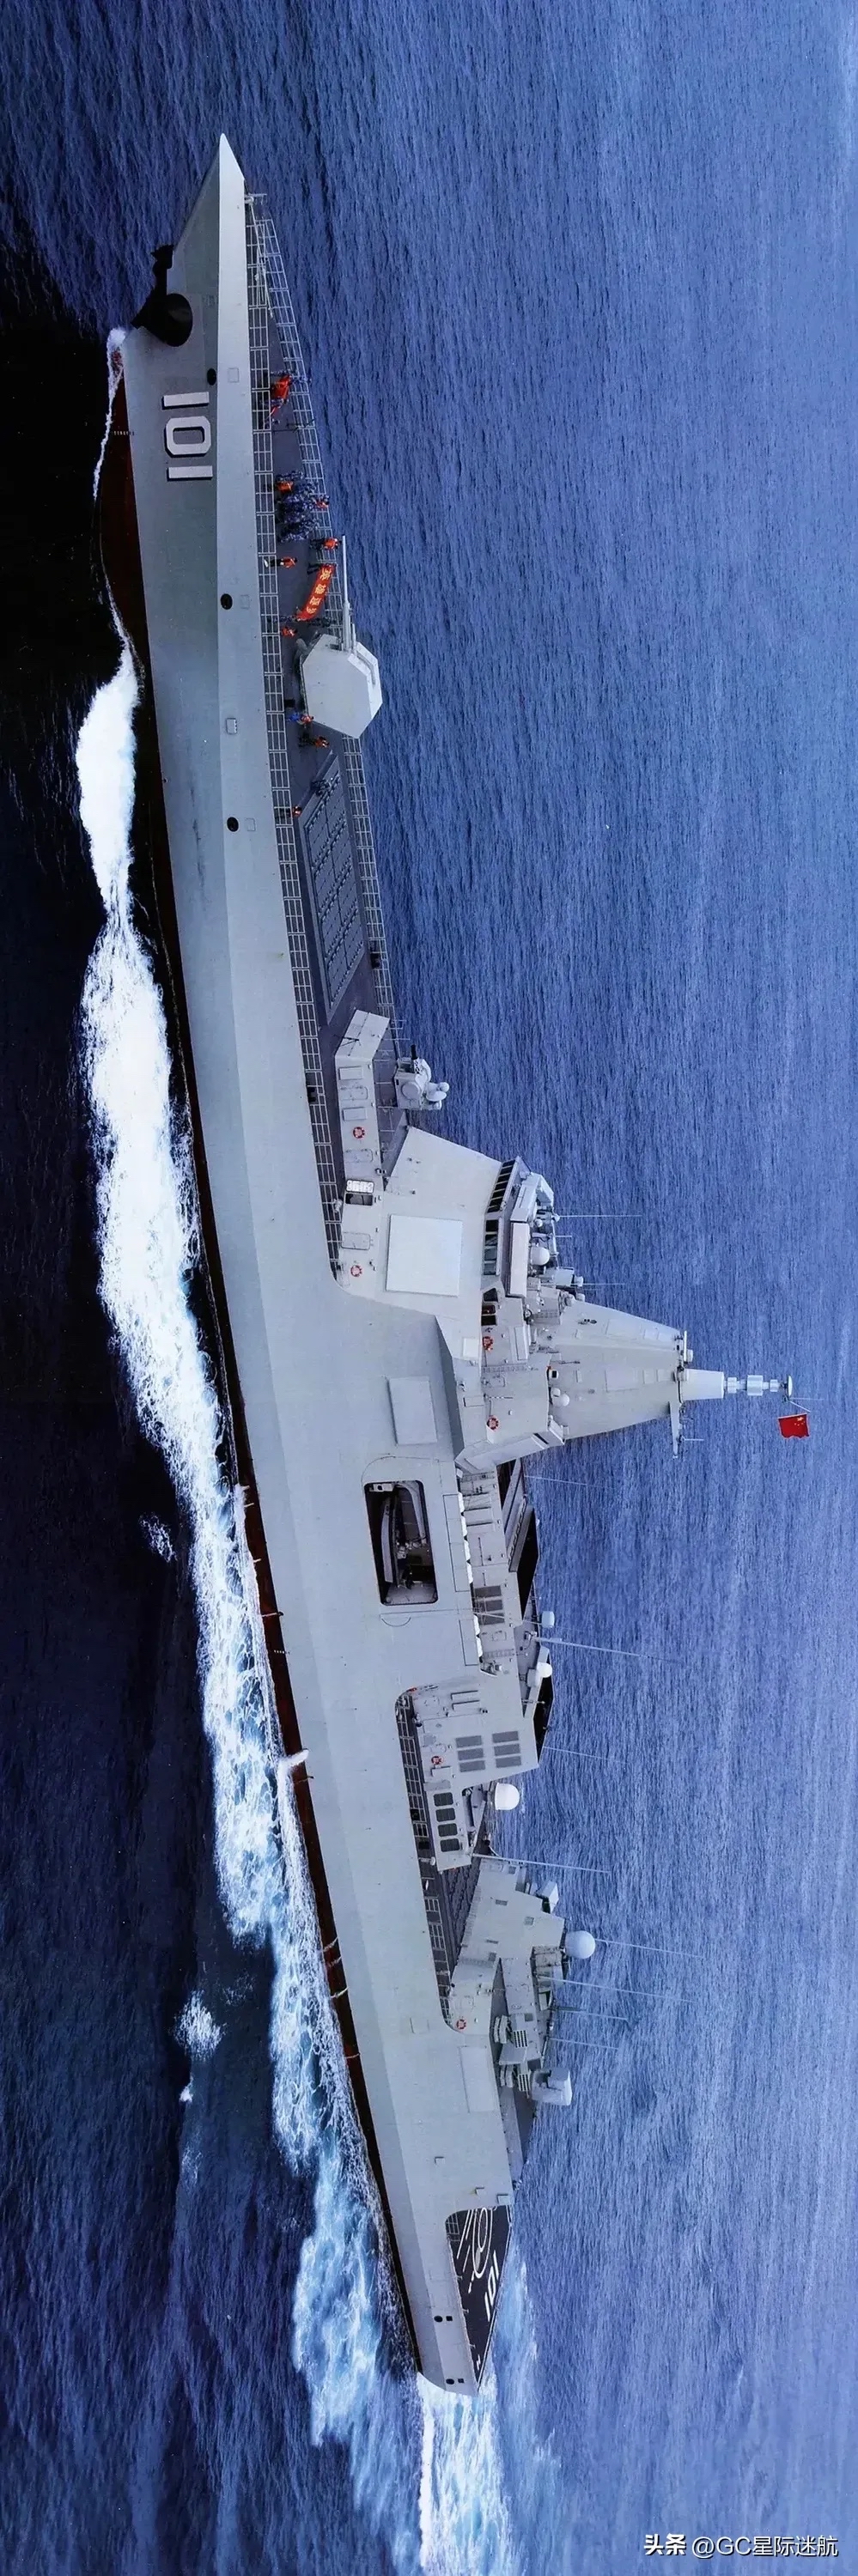 055型驱逐舰手机壁纸图片